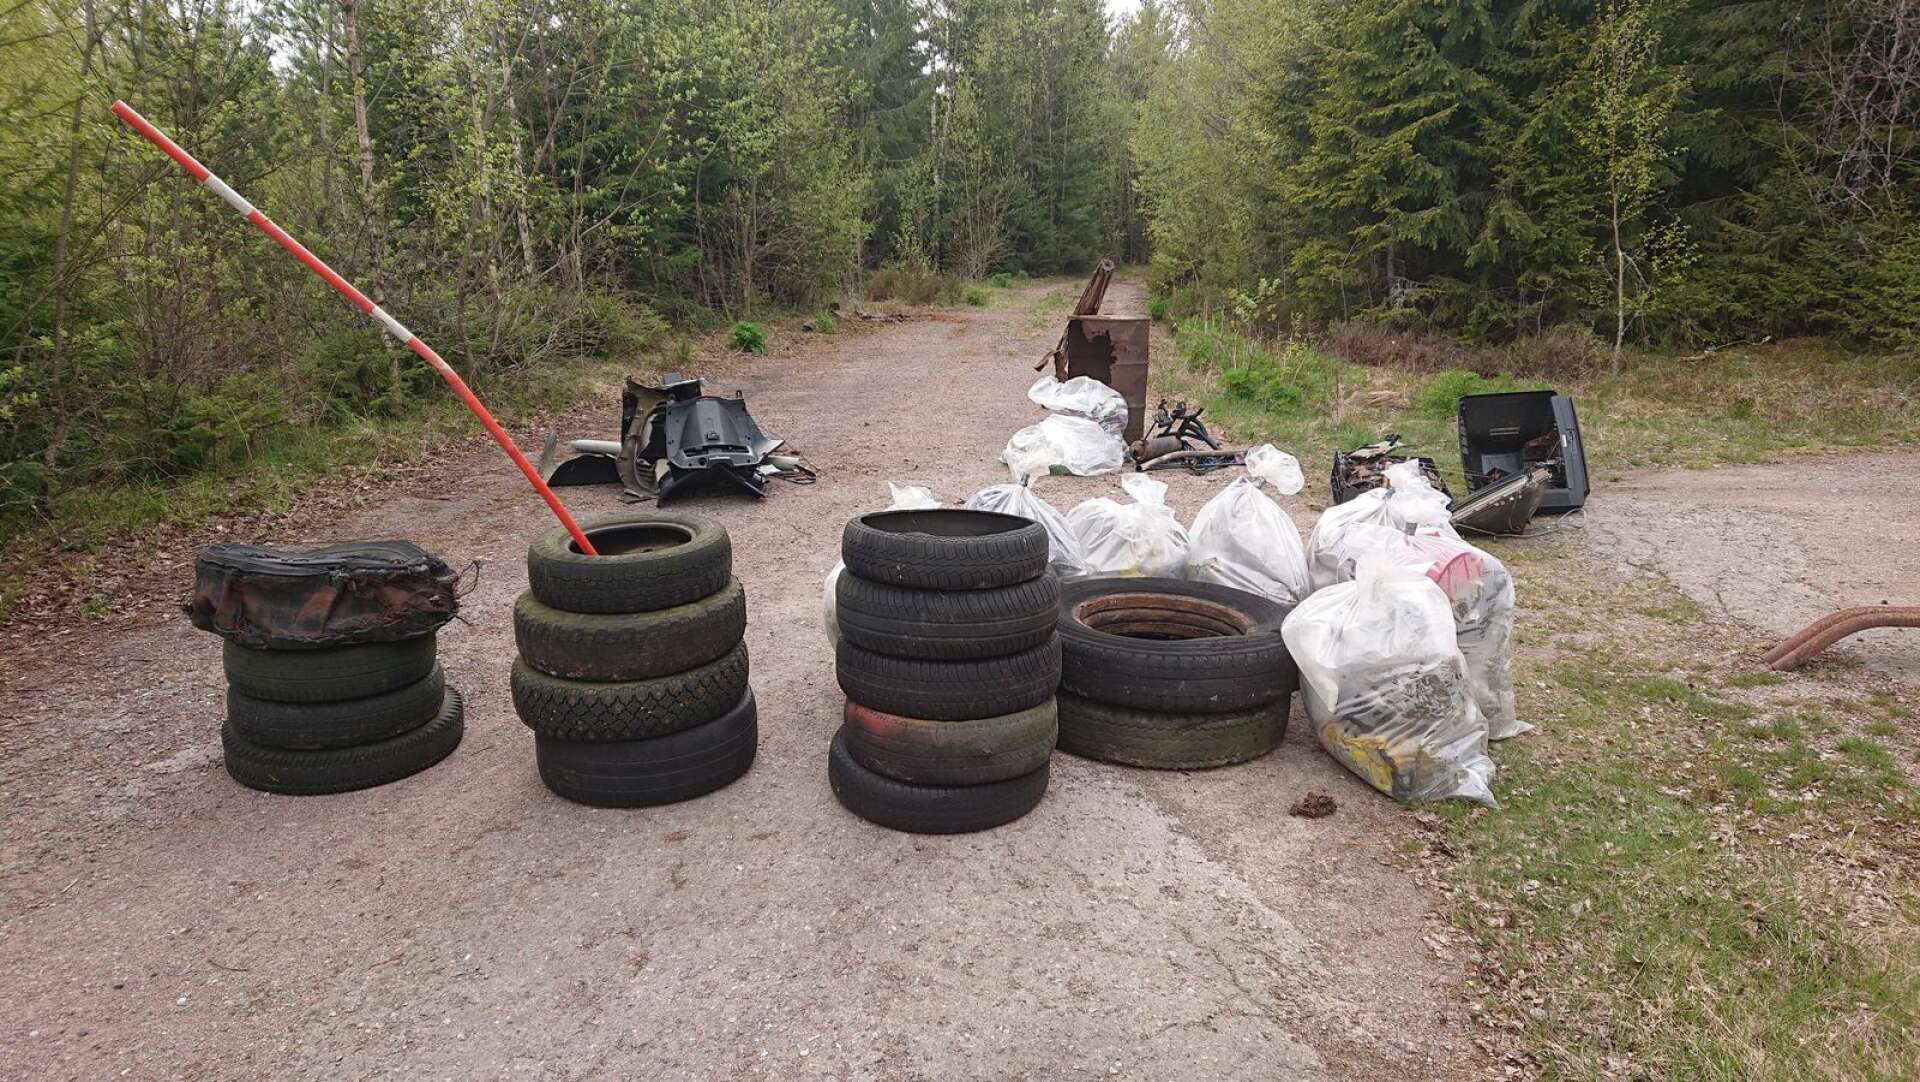 Markägaren Stefan Gustavsson har under våren samlat ihop mängder av skräp, som dumpats längs ensliga små avtagsvägar till väg 164 mellan Rådanevägen och Hålsjöängsrakan i Edsleskog.